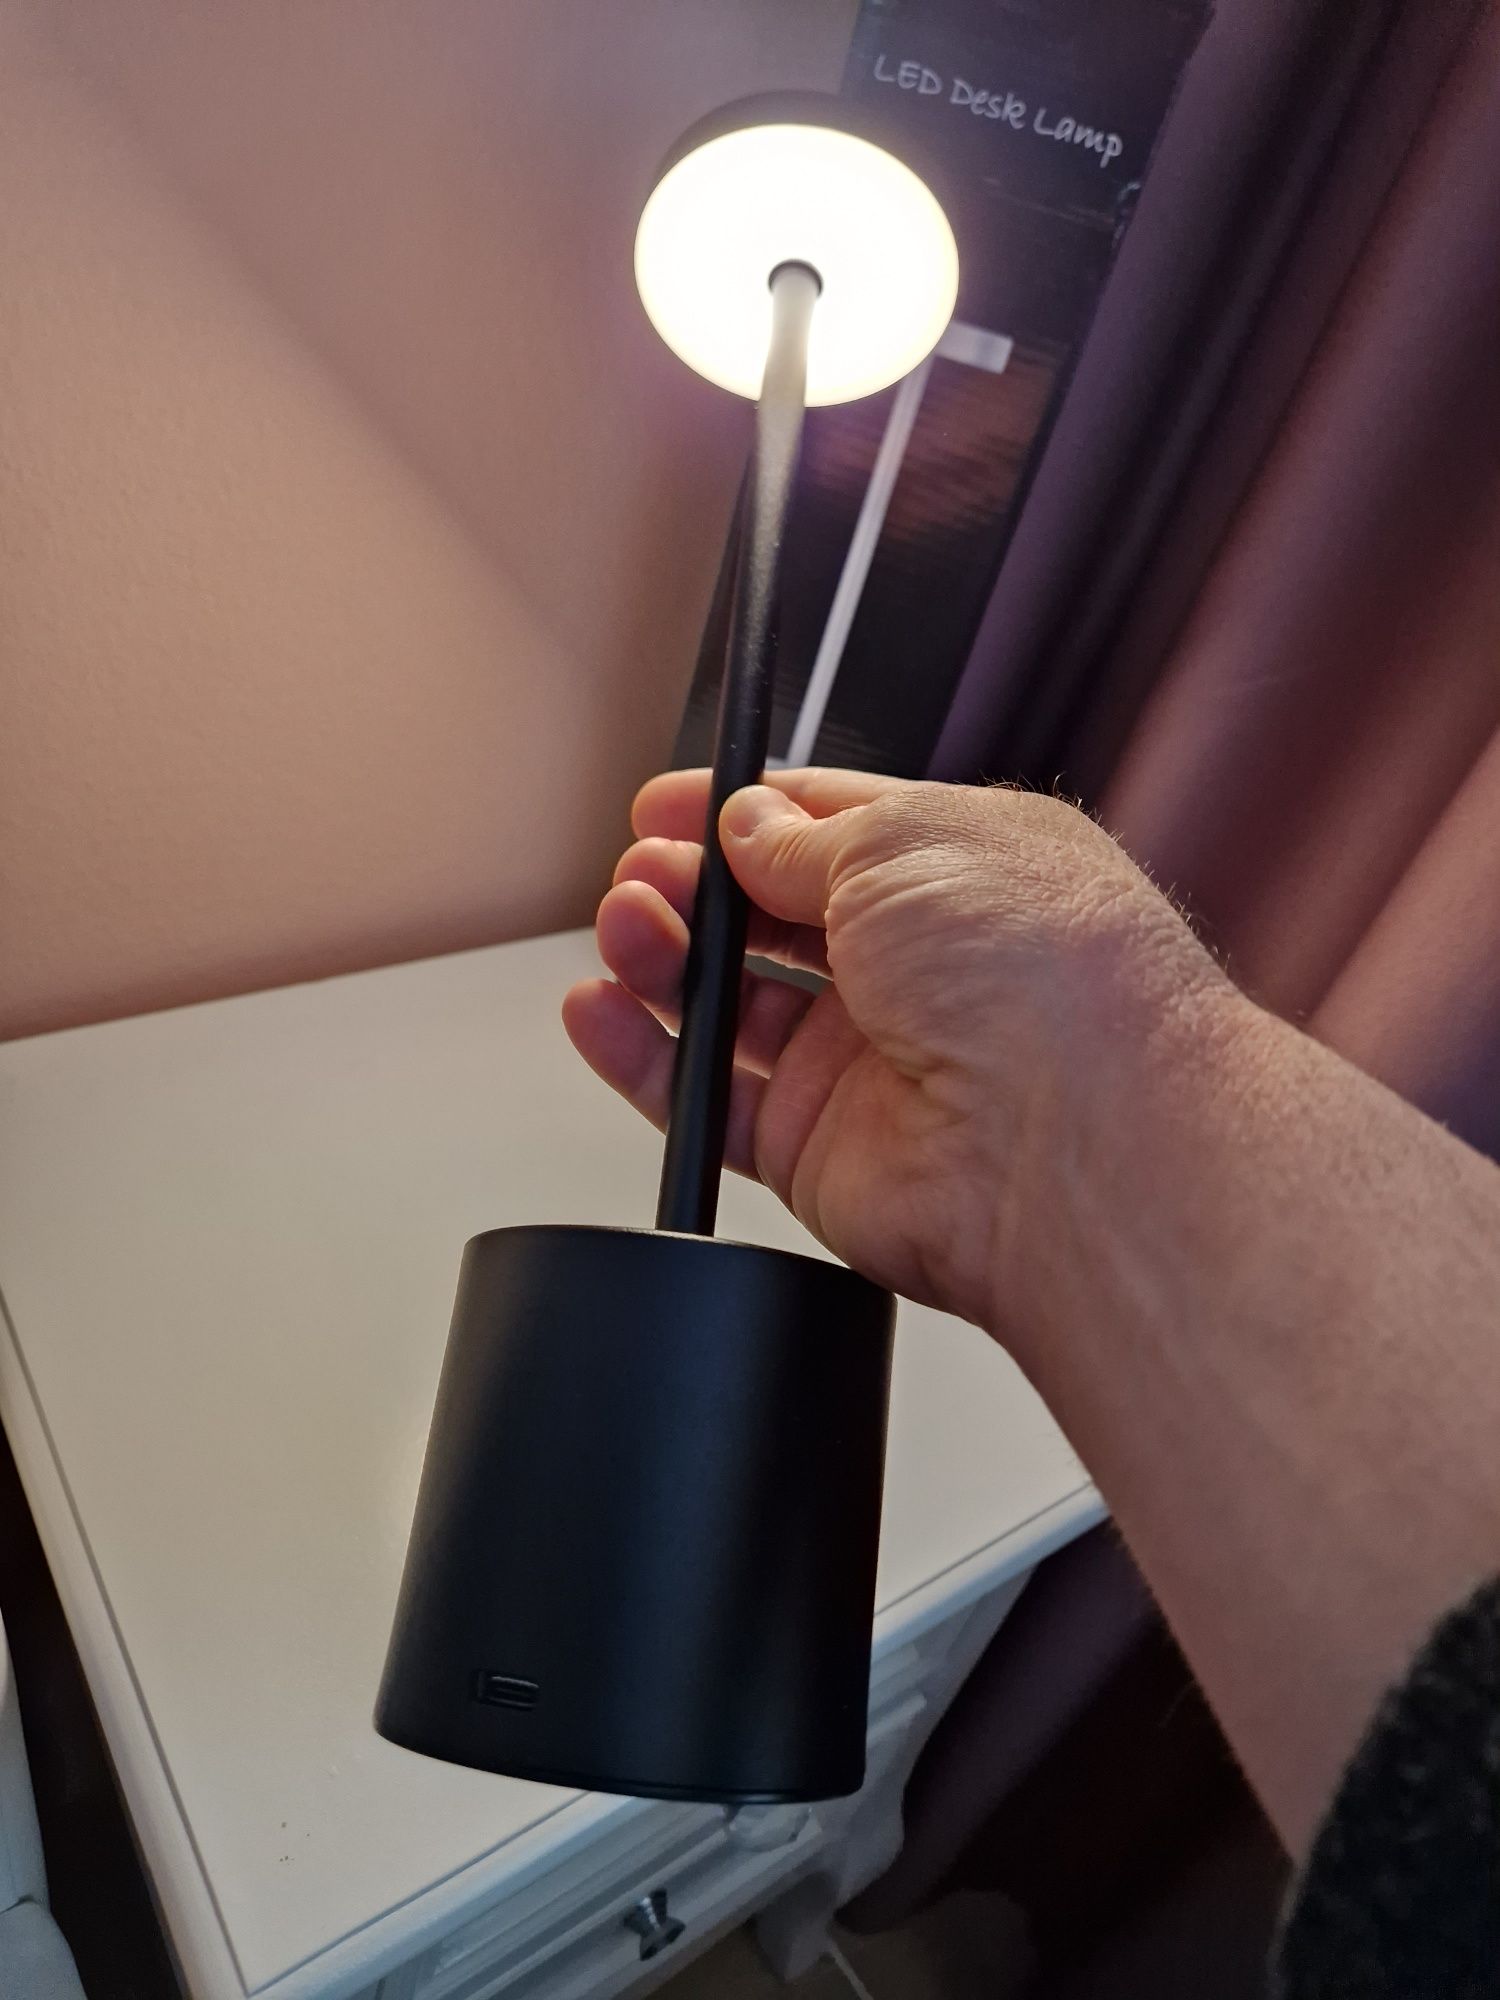 Лед лампа за маса / безжична - 3 режима на светене и регул. светлина